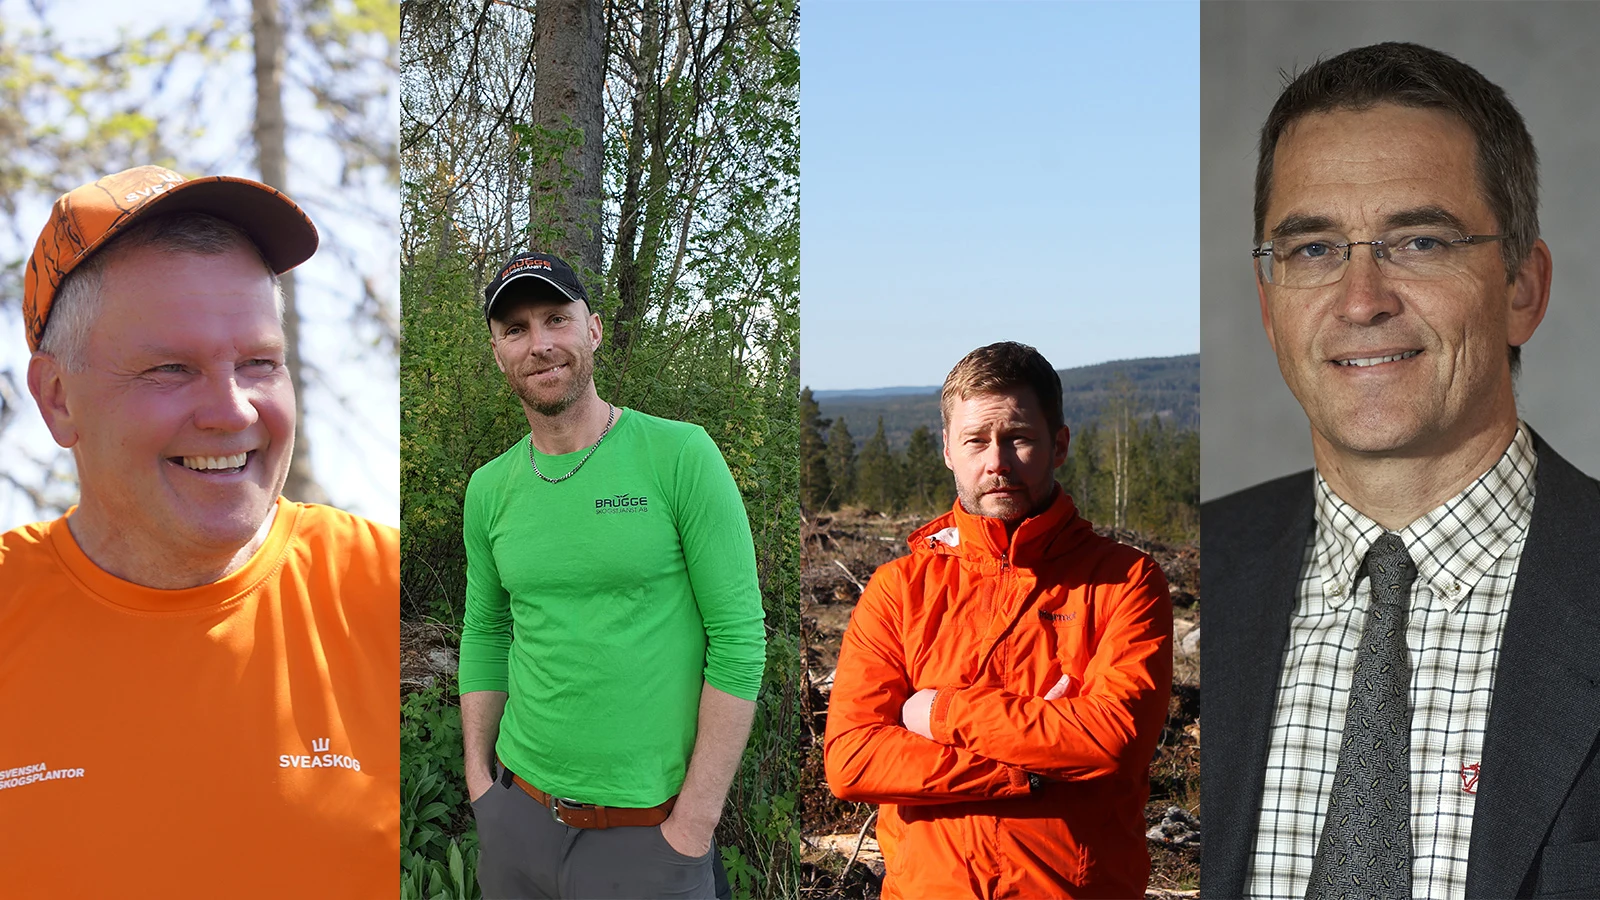 Fyra röster om hur Coronapandemin påverkat deras respektive verksamheter. Från vänster: Roland Eklund, Markus Brugge, Fredrik Gundhe och Ola Kårén.